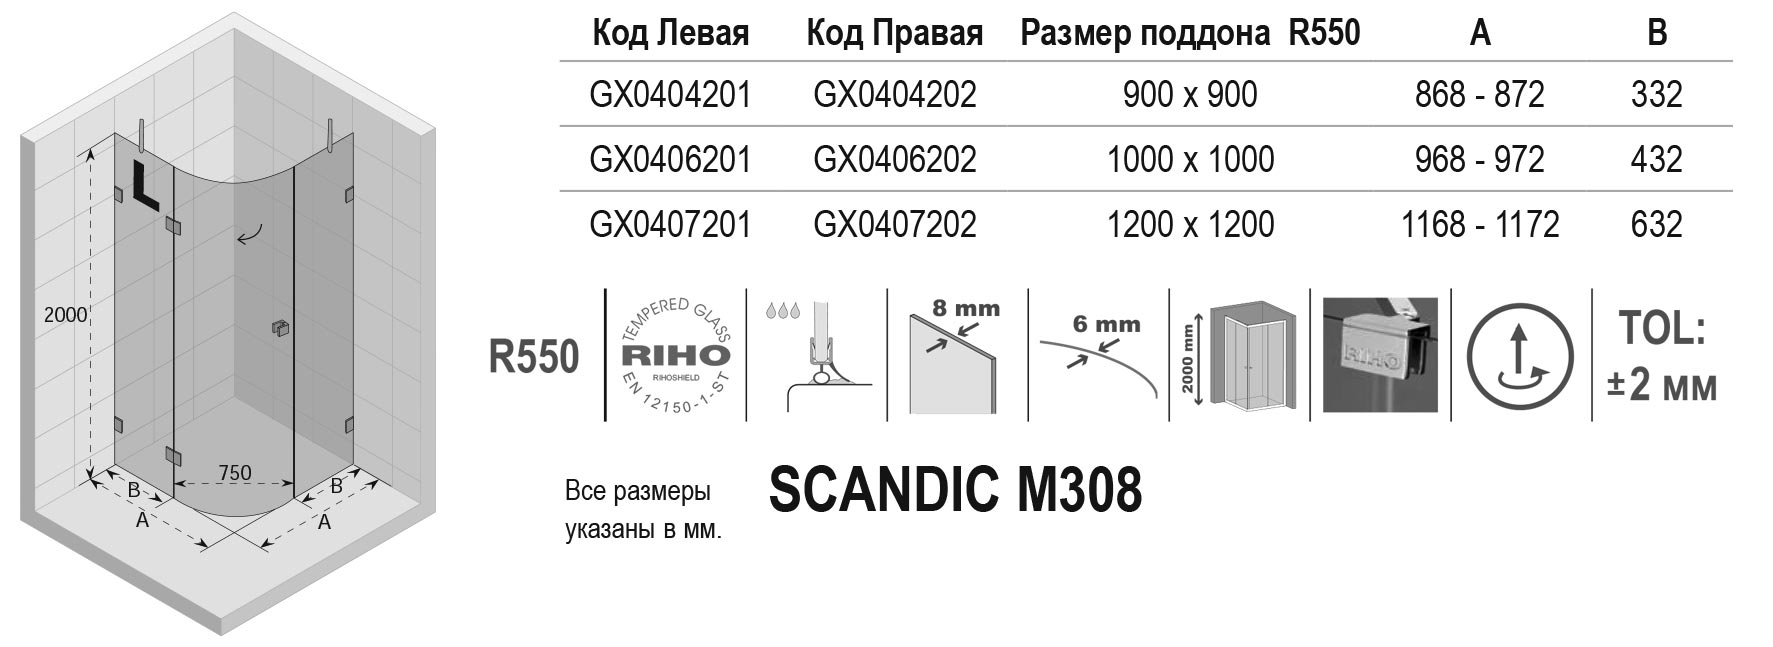 Чертёж Riho Scandic M308